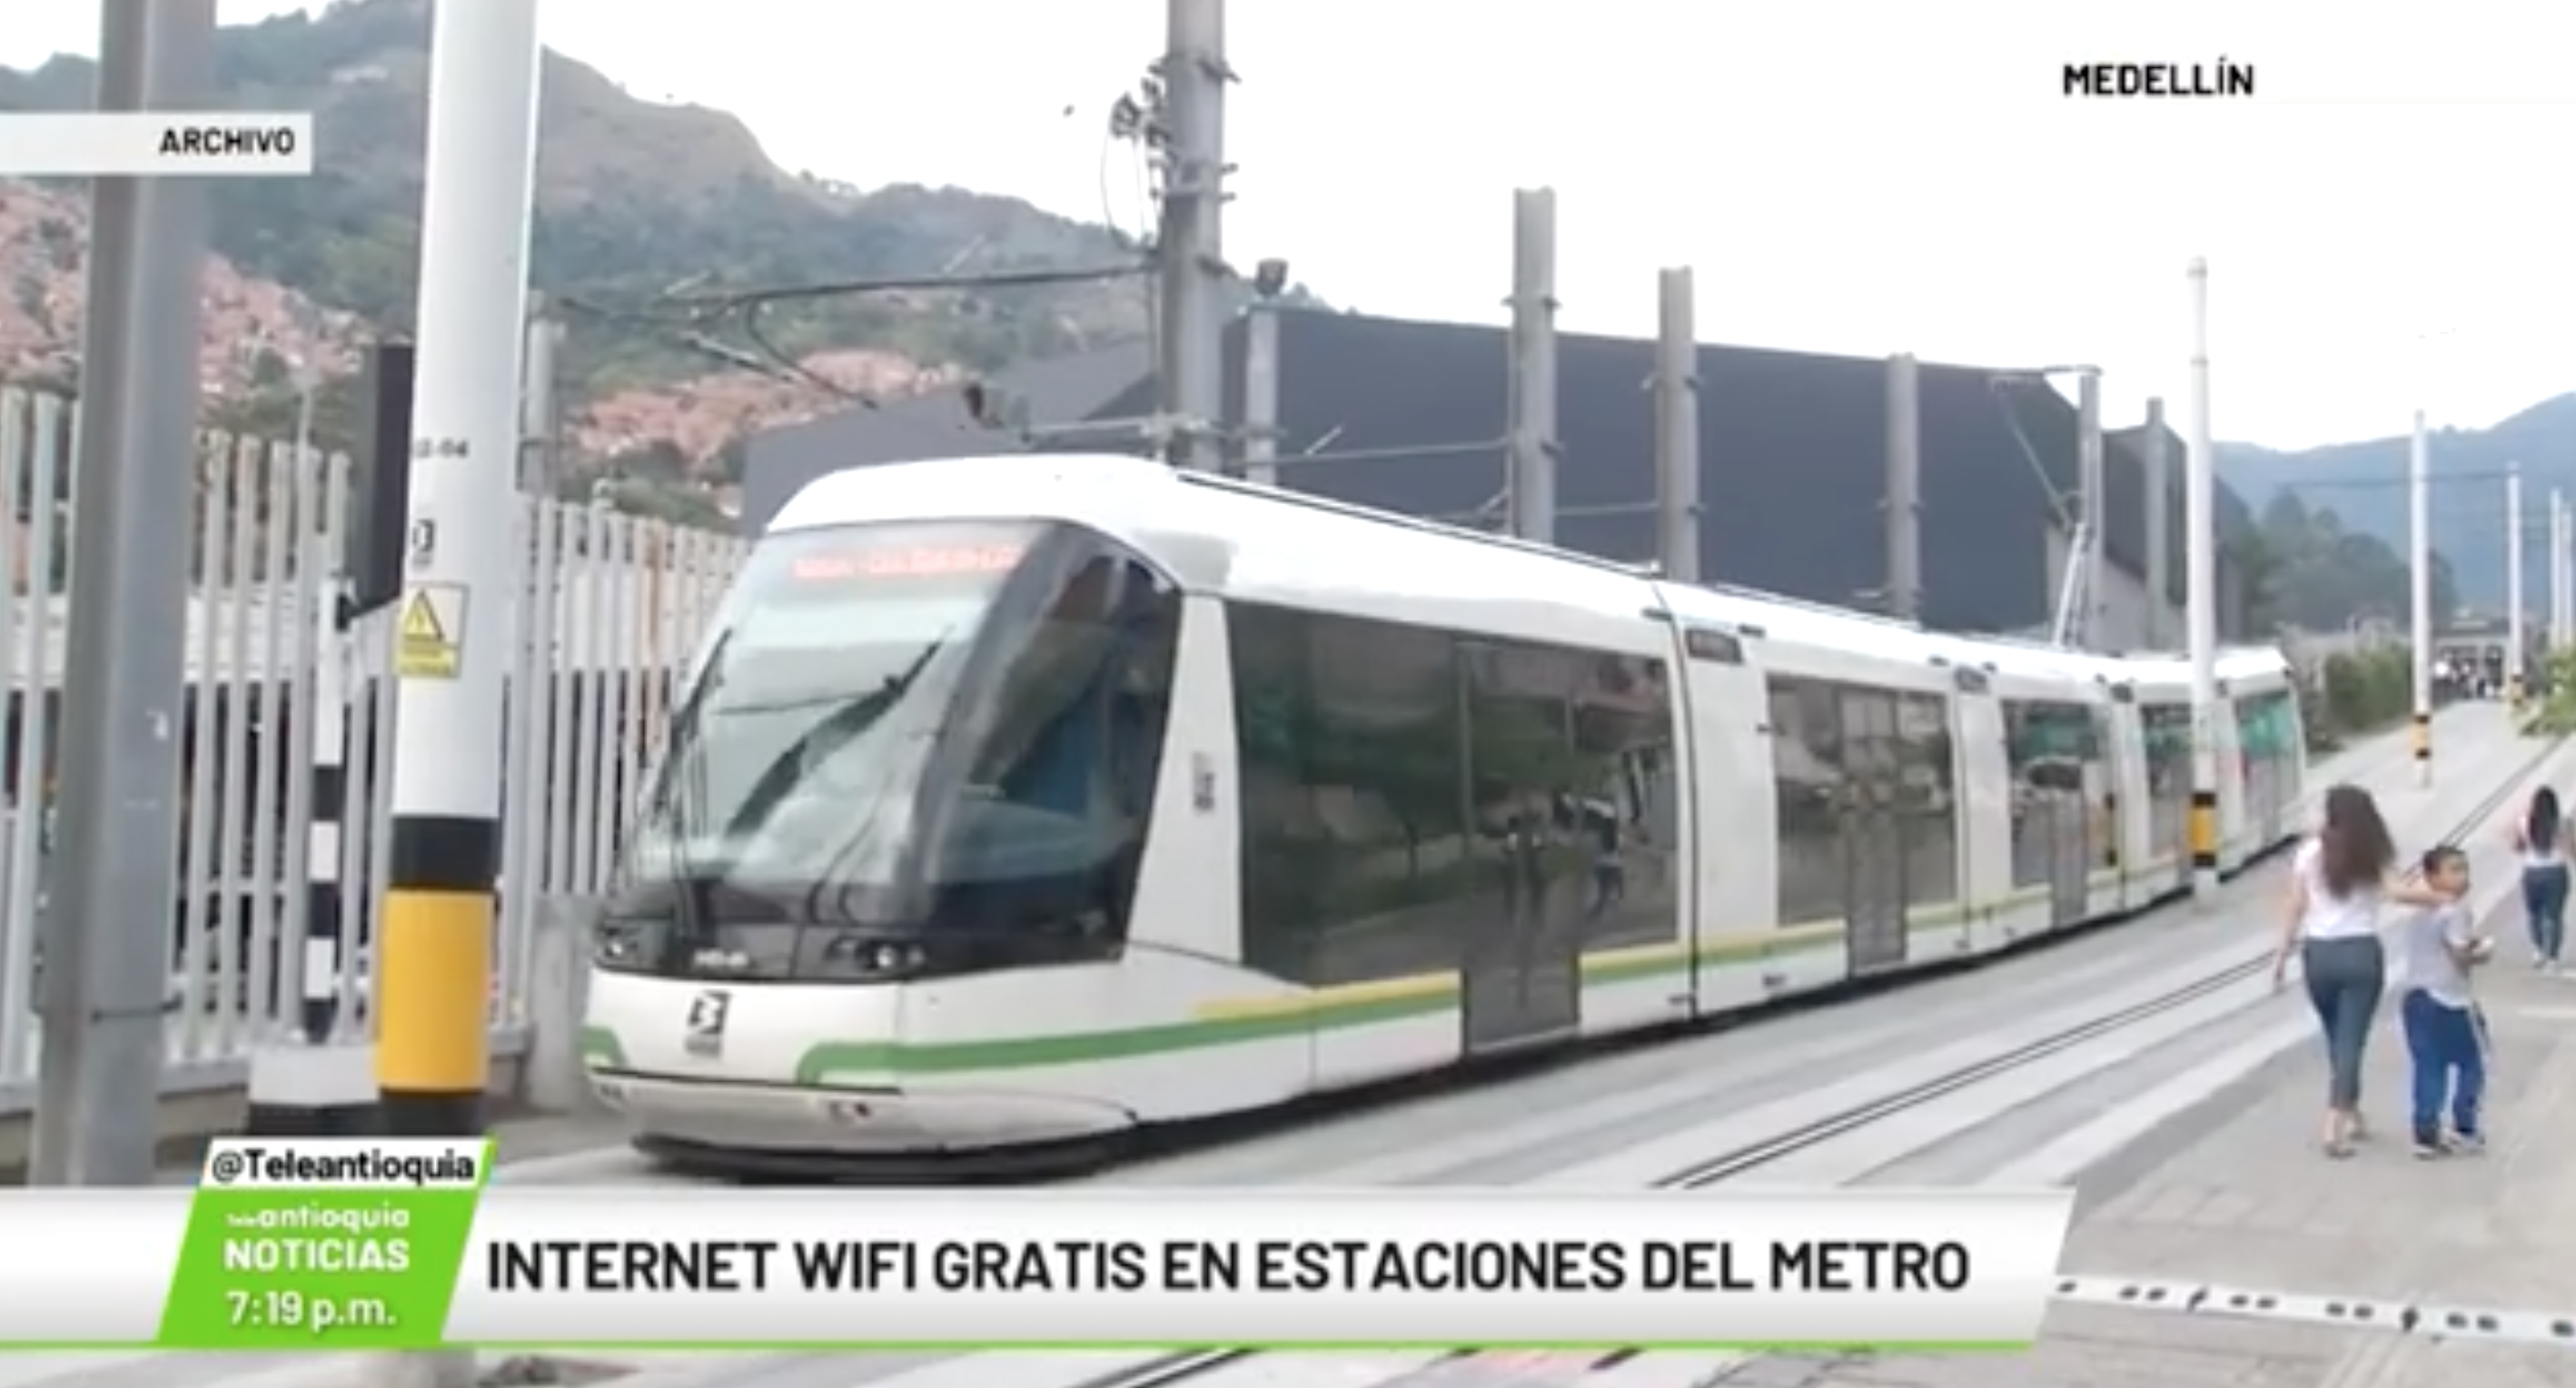 Internet WIFI gratis en estaciones del metro